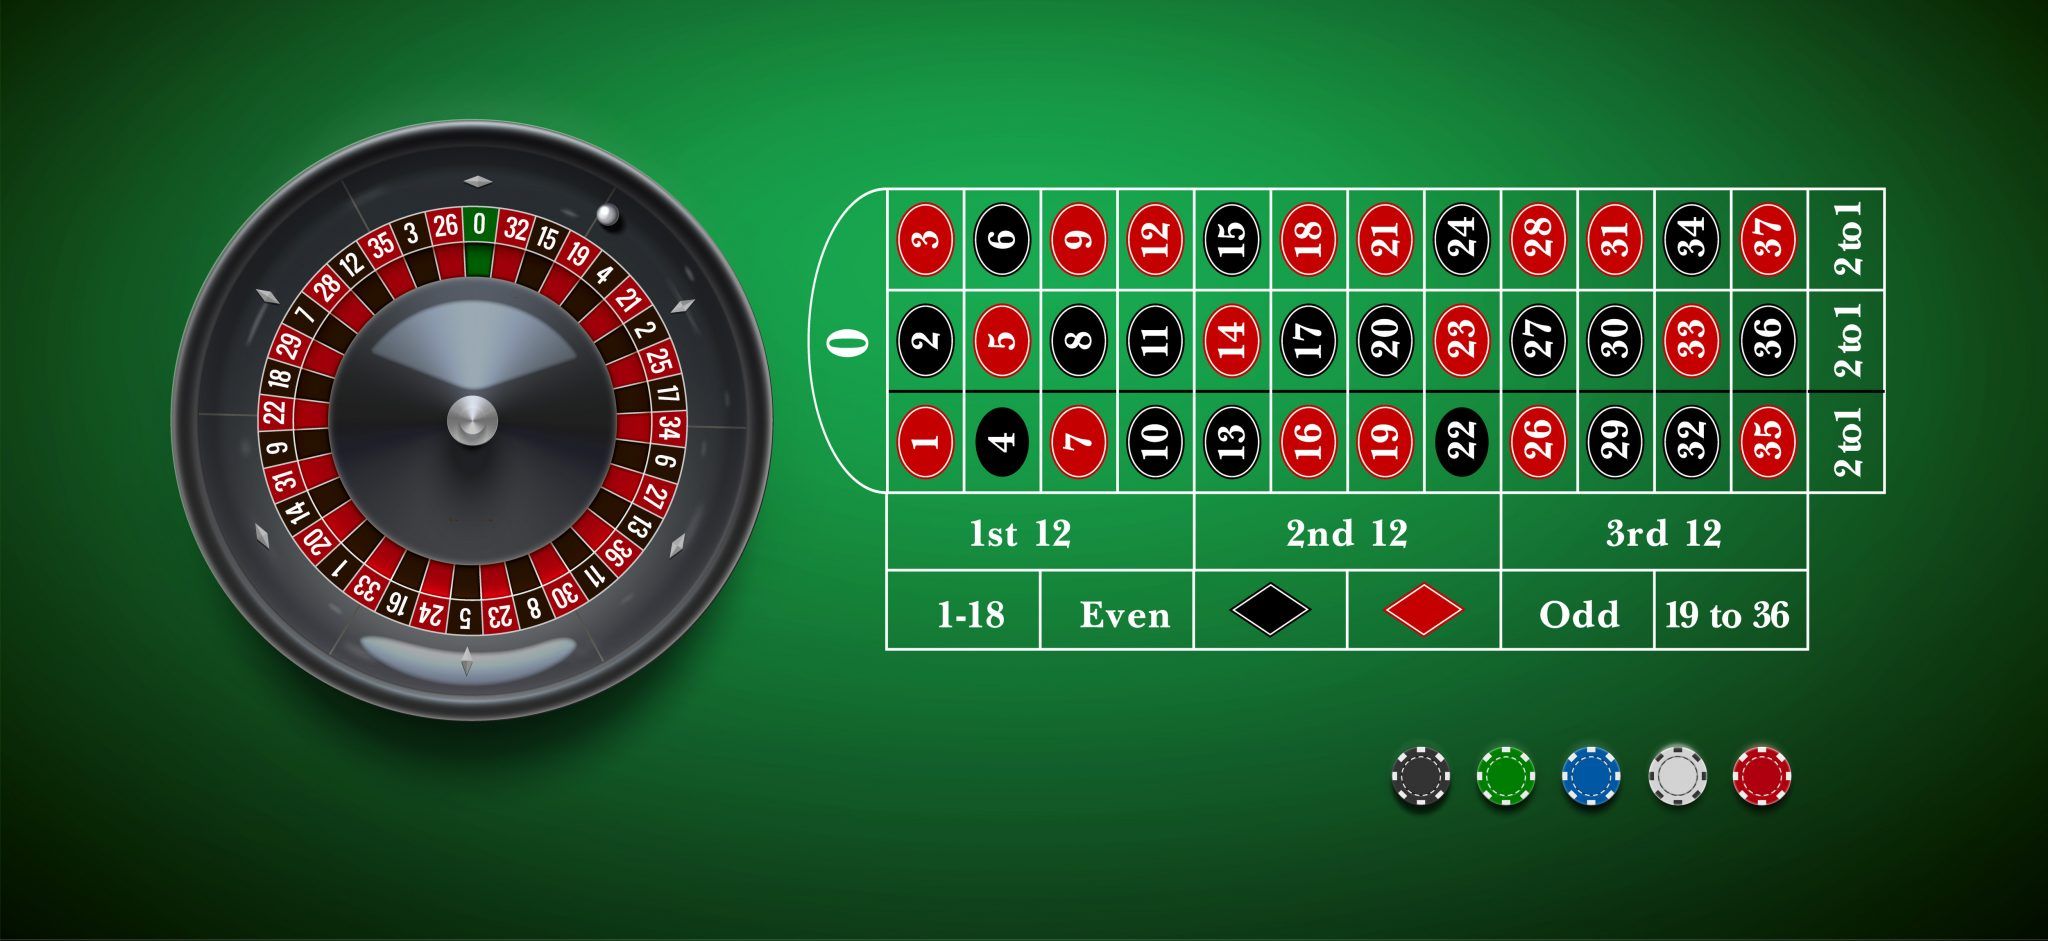 เดิมพัน roulette กับ 5 สนามแข่งและการเดิมพันที่ดีที่สุด.jpg